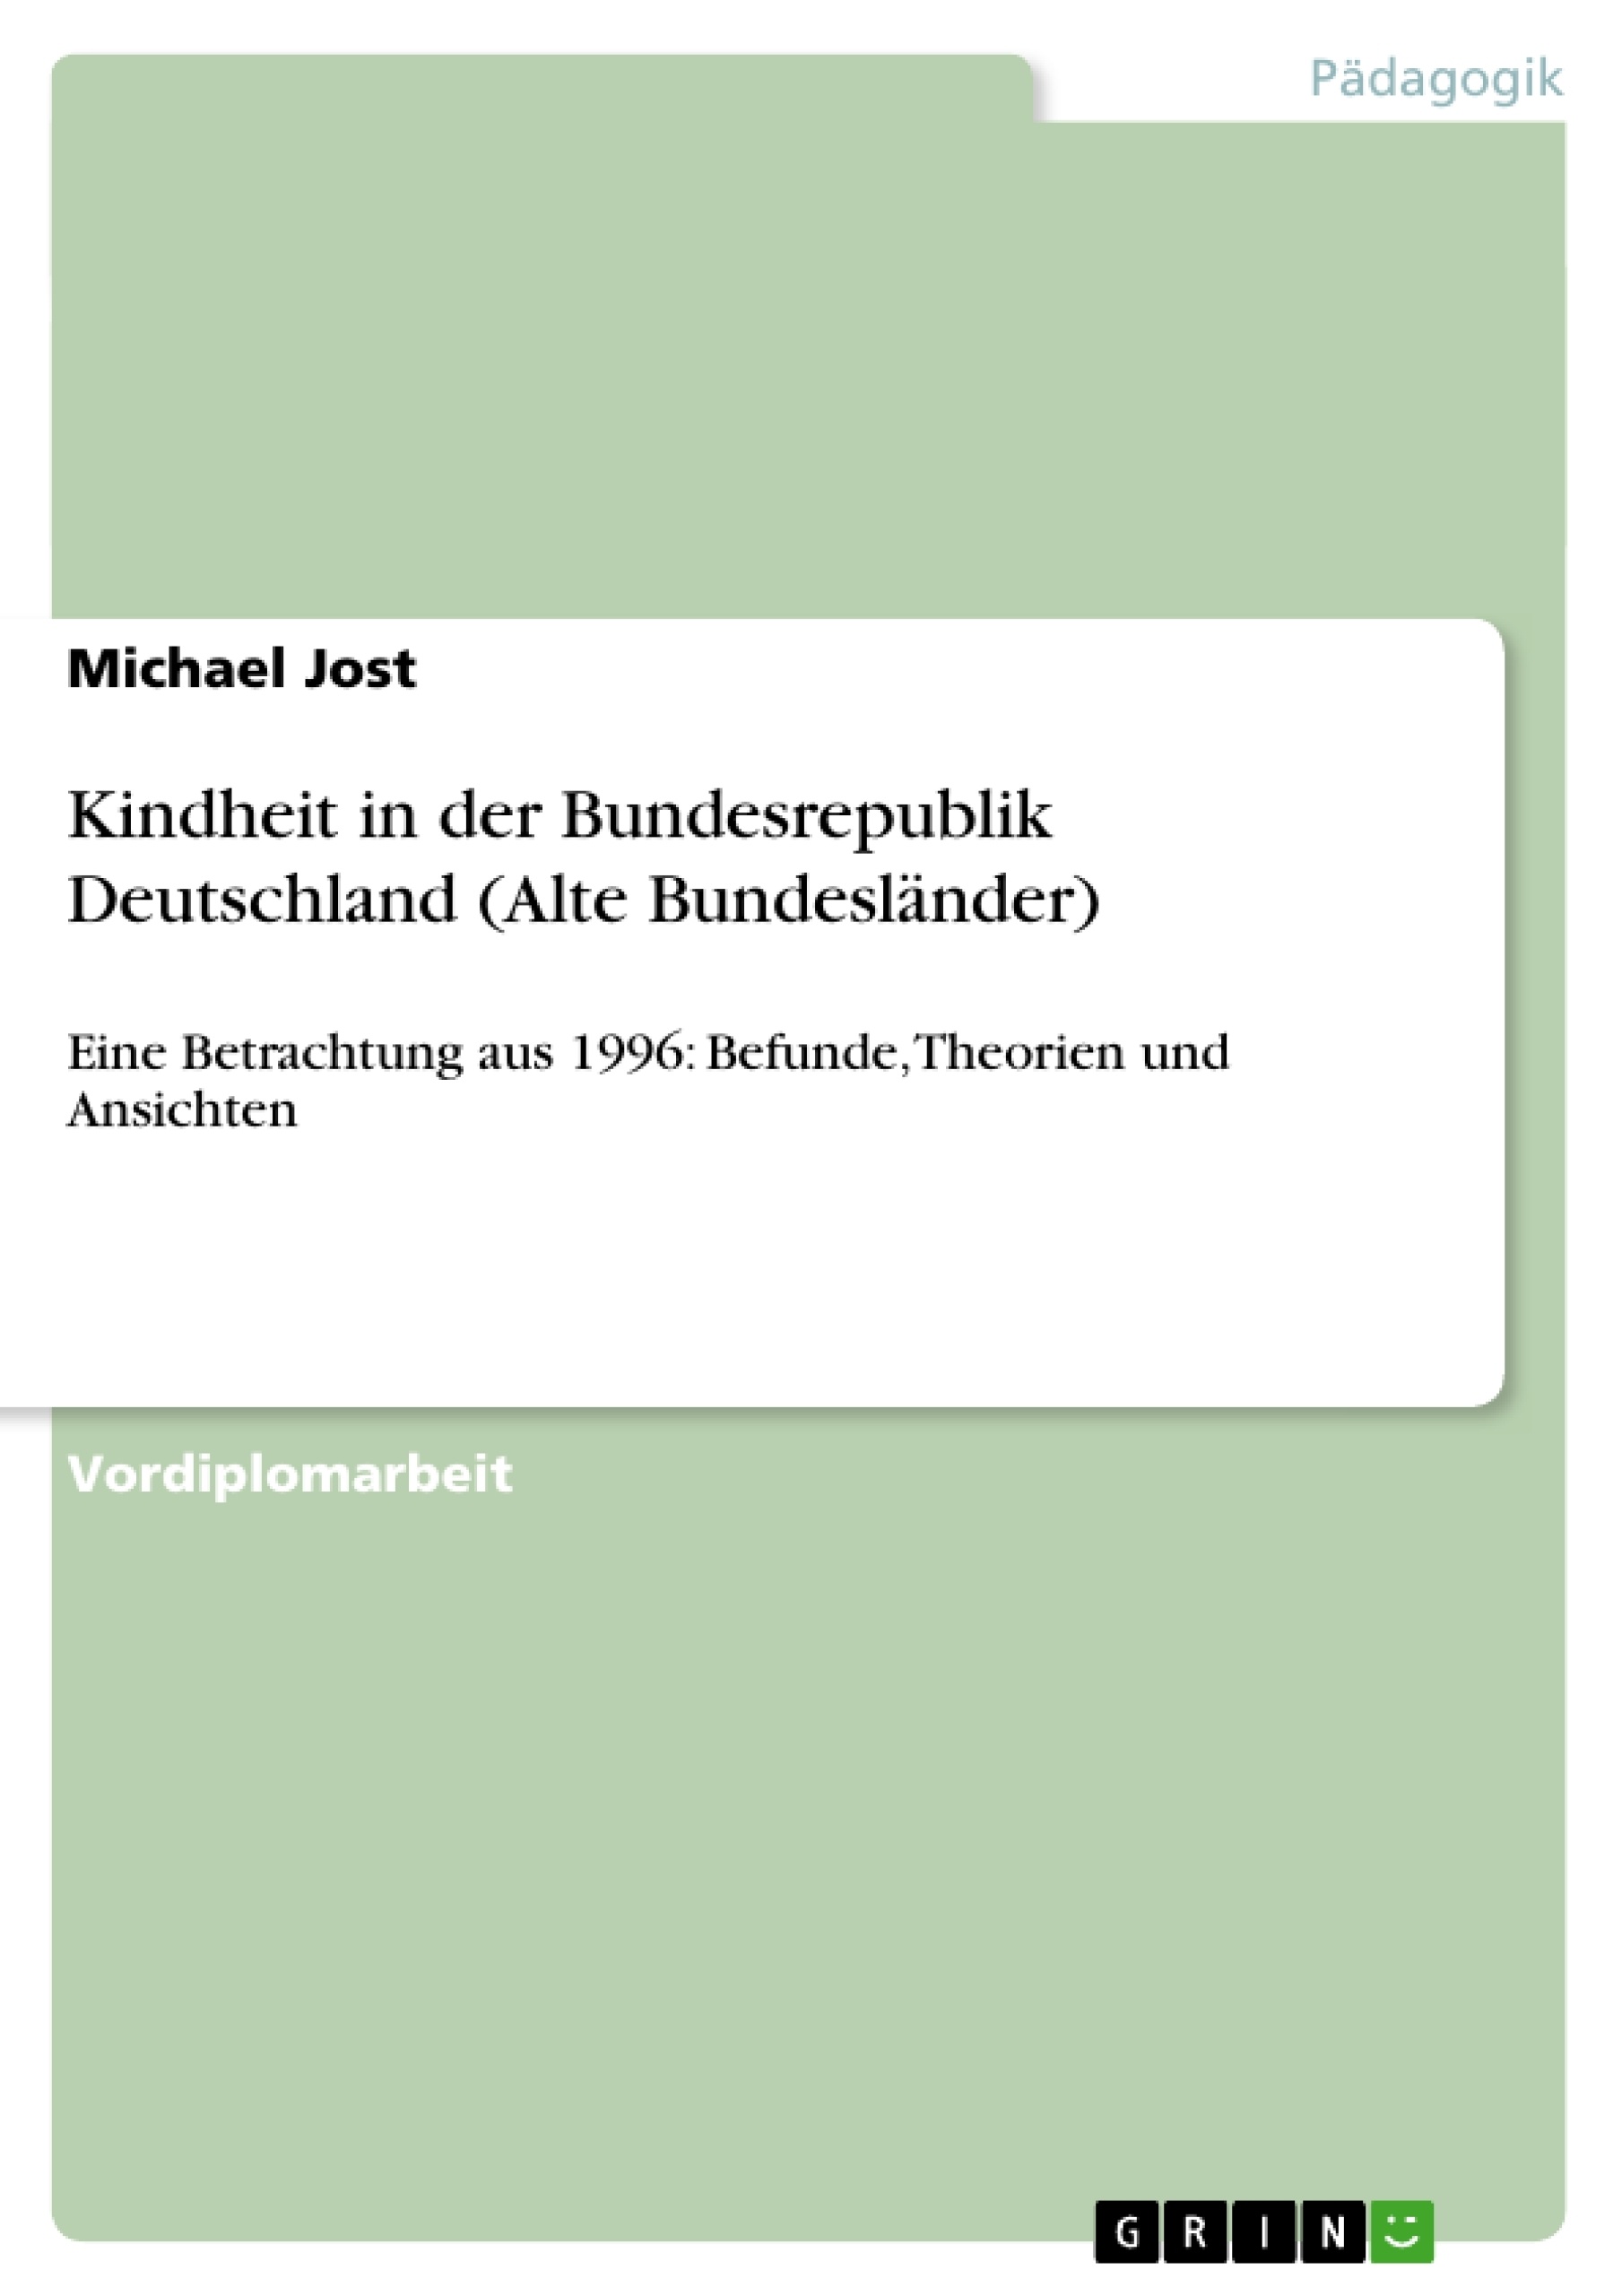 Titre: Kindheit in der Bundesrepublik Deutschland (Alte Bundesländer)